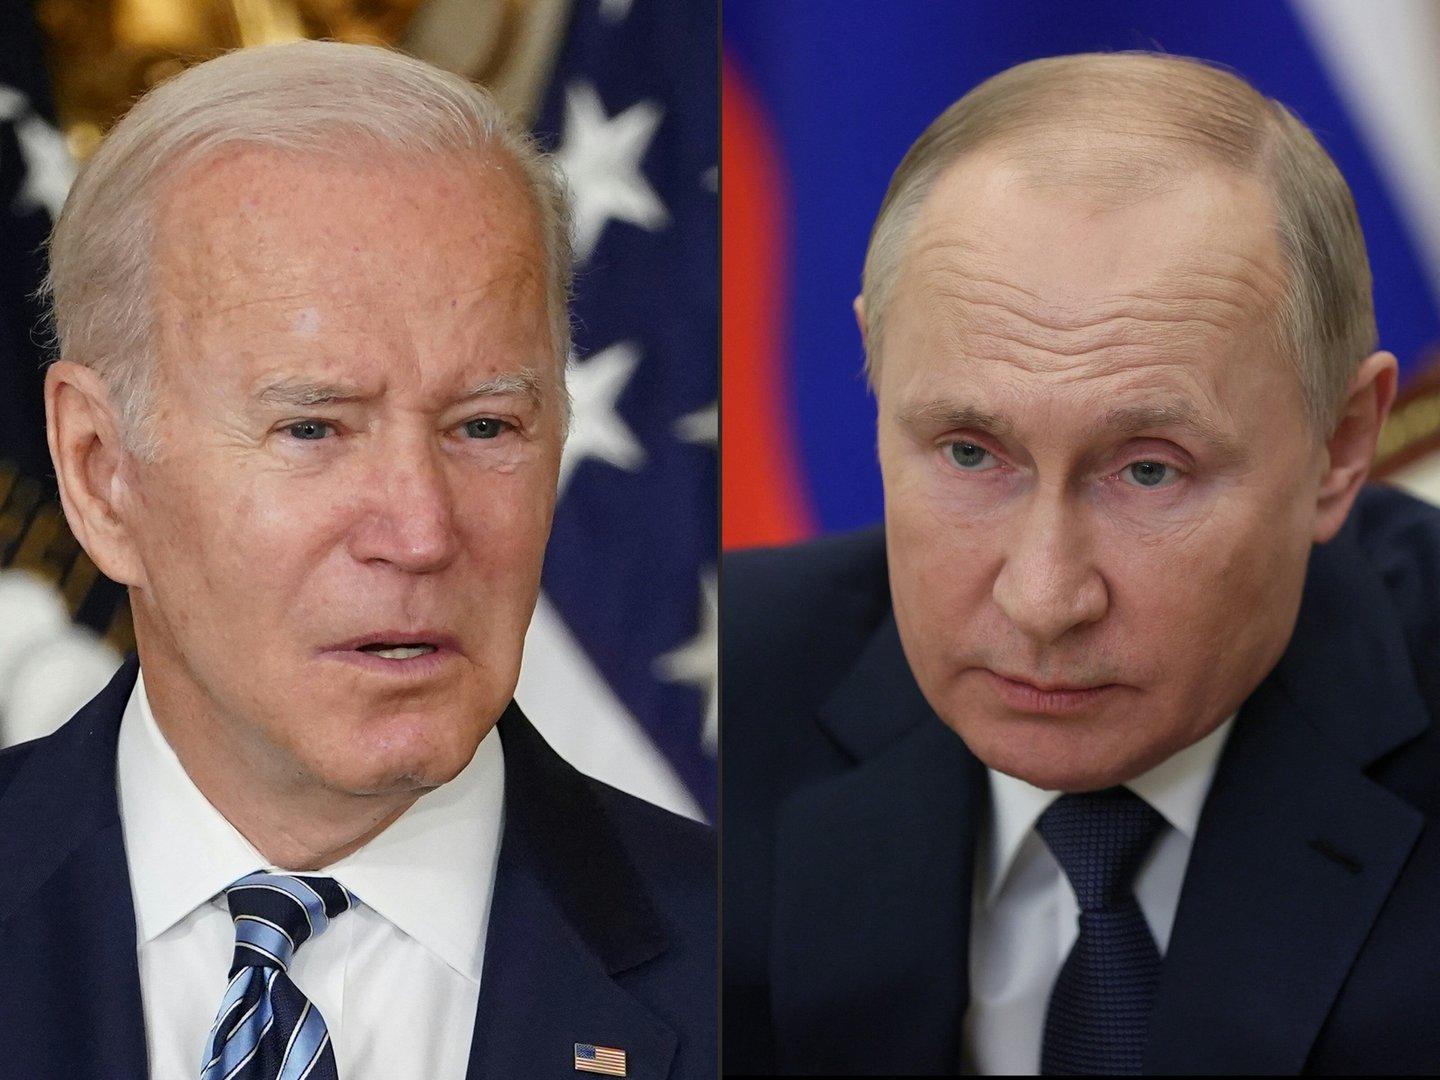 Putin und Biden telefonieren schon wieder wegen Ukraine-Krise